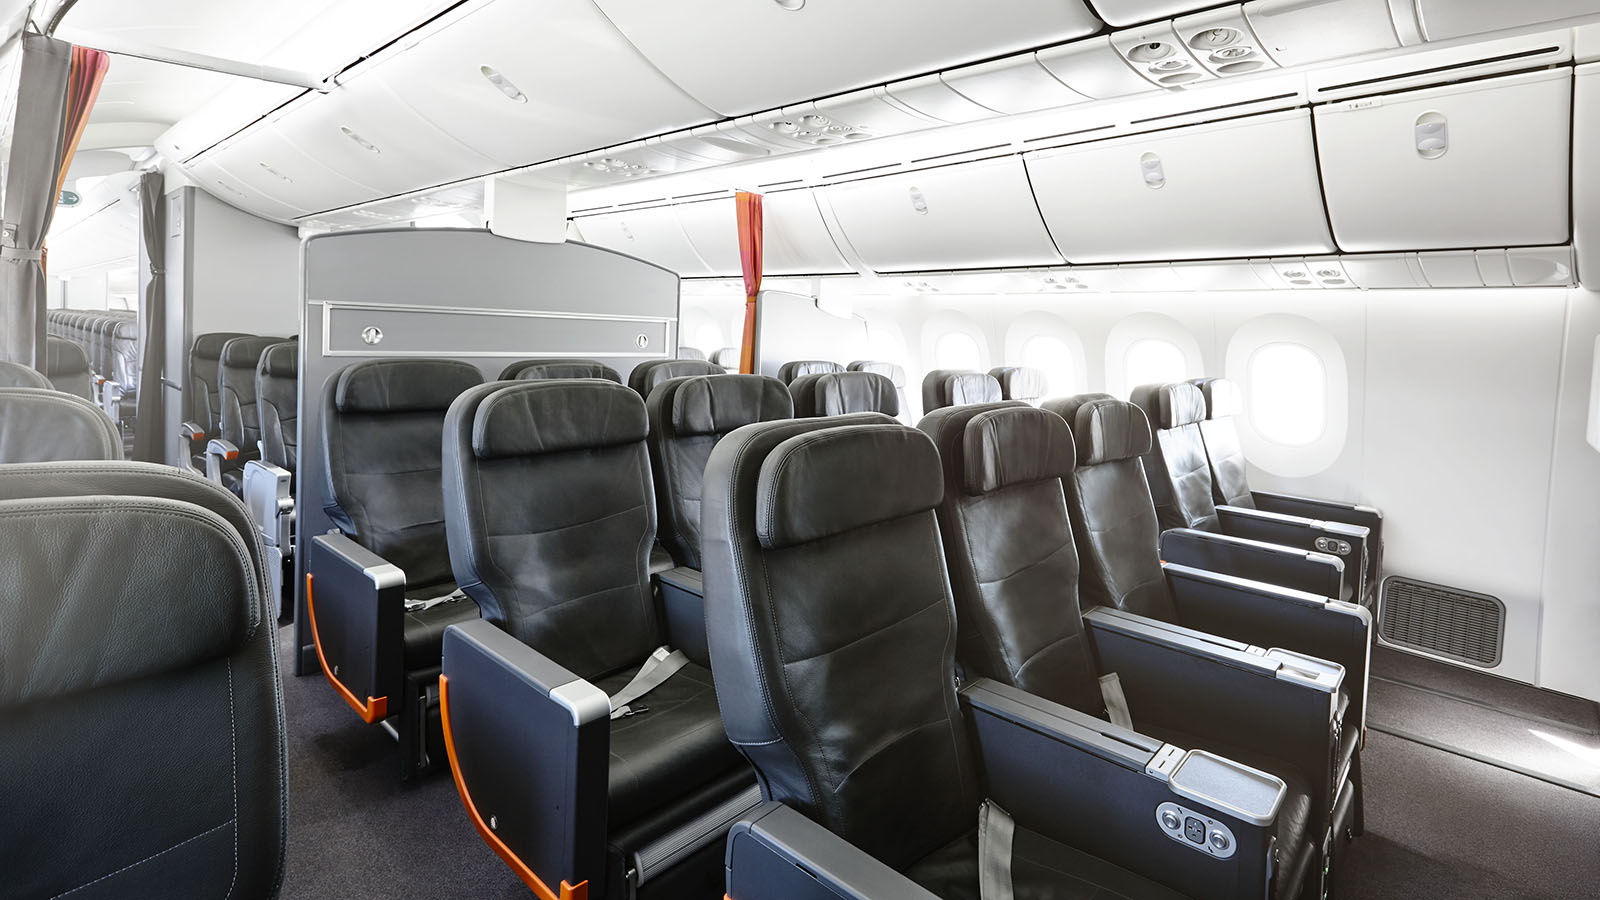 Jetstar Boeing 787 Business Class